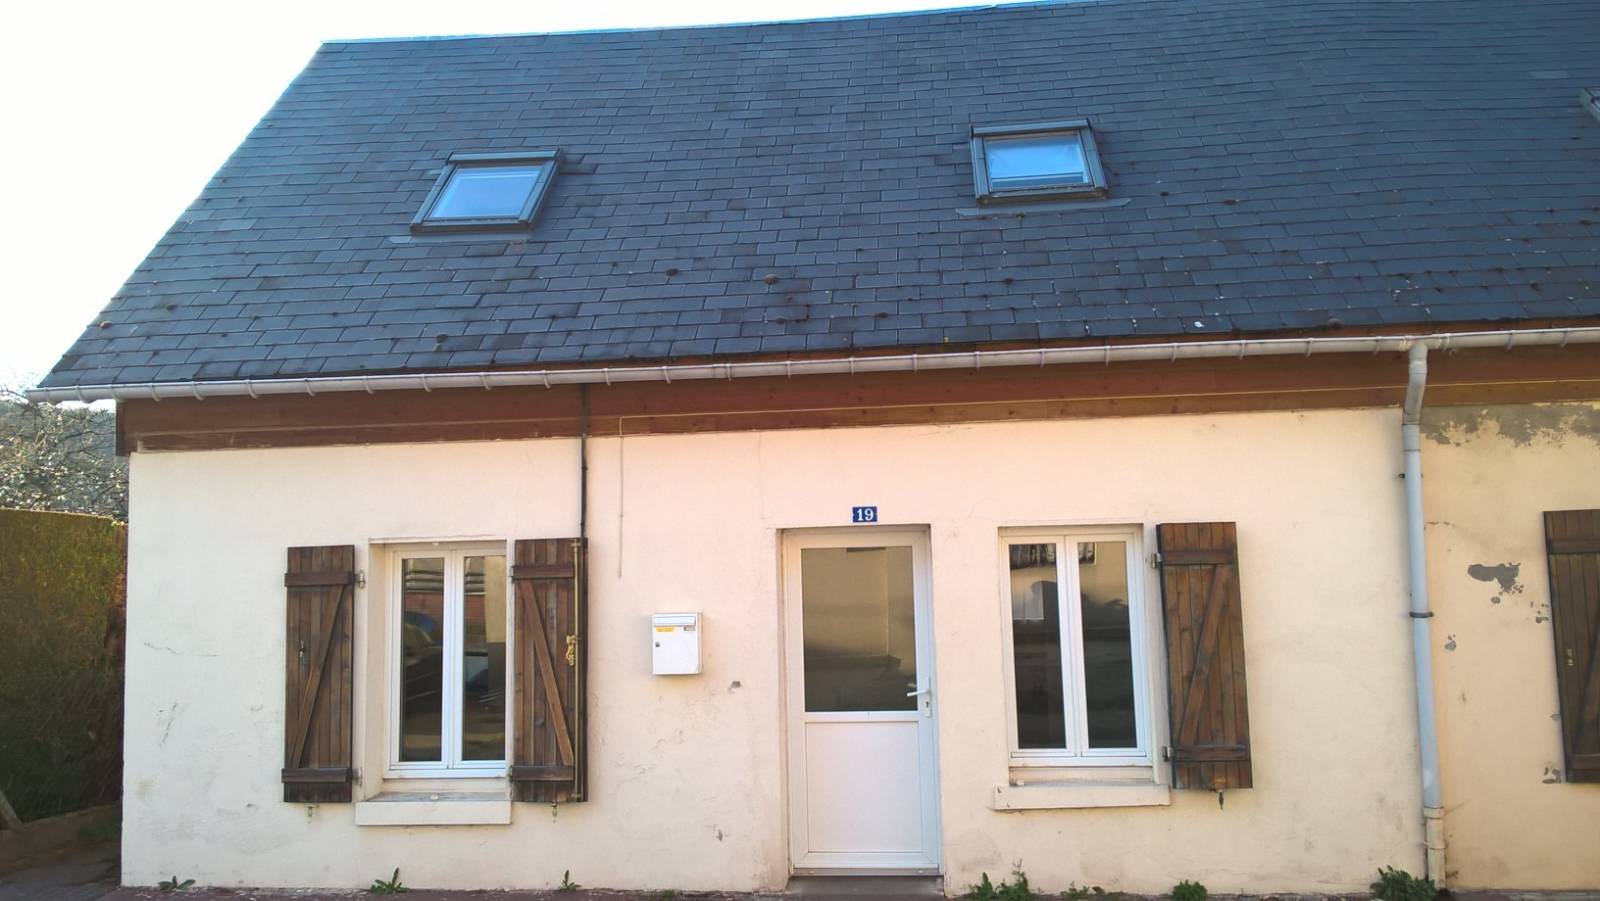 Maison actuellement louée à la vente pour investissement entre Serquigny et Nassandres-sur-Risle  avec petite cour extérieur